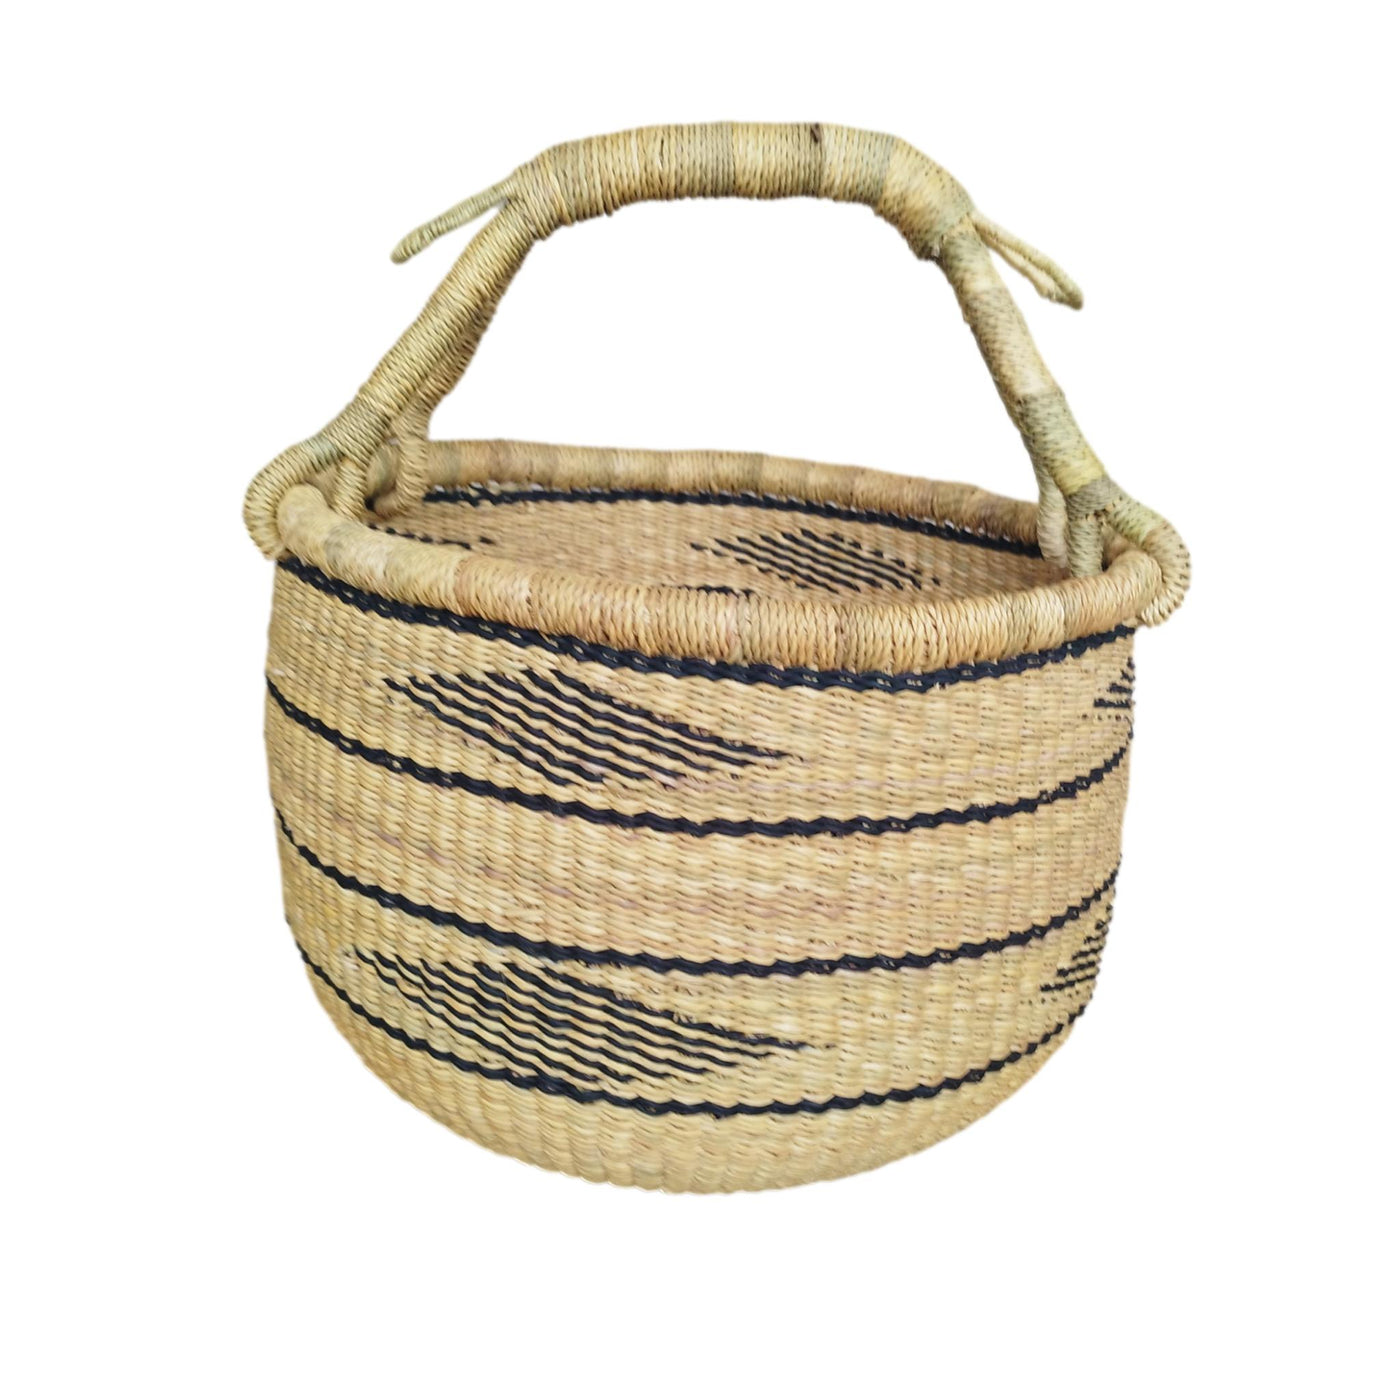 Bolga Market Basket |African basket |Market  basket |Picnic basket |Fruit basket |Bolga basket | Straw bag |Antique baskets